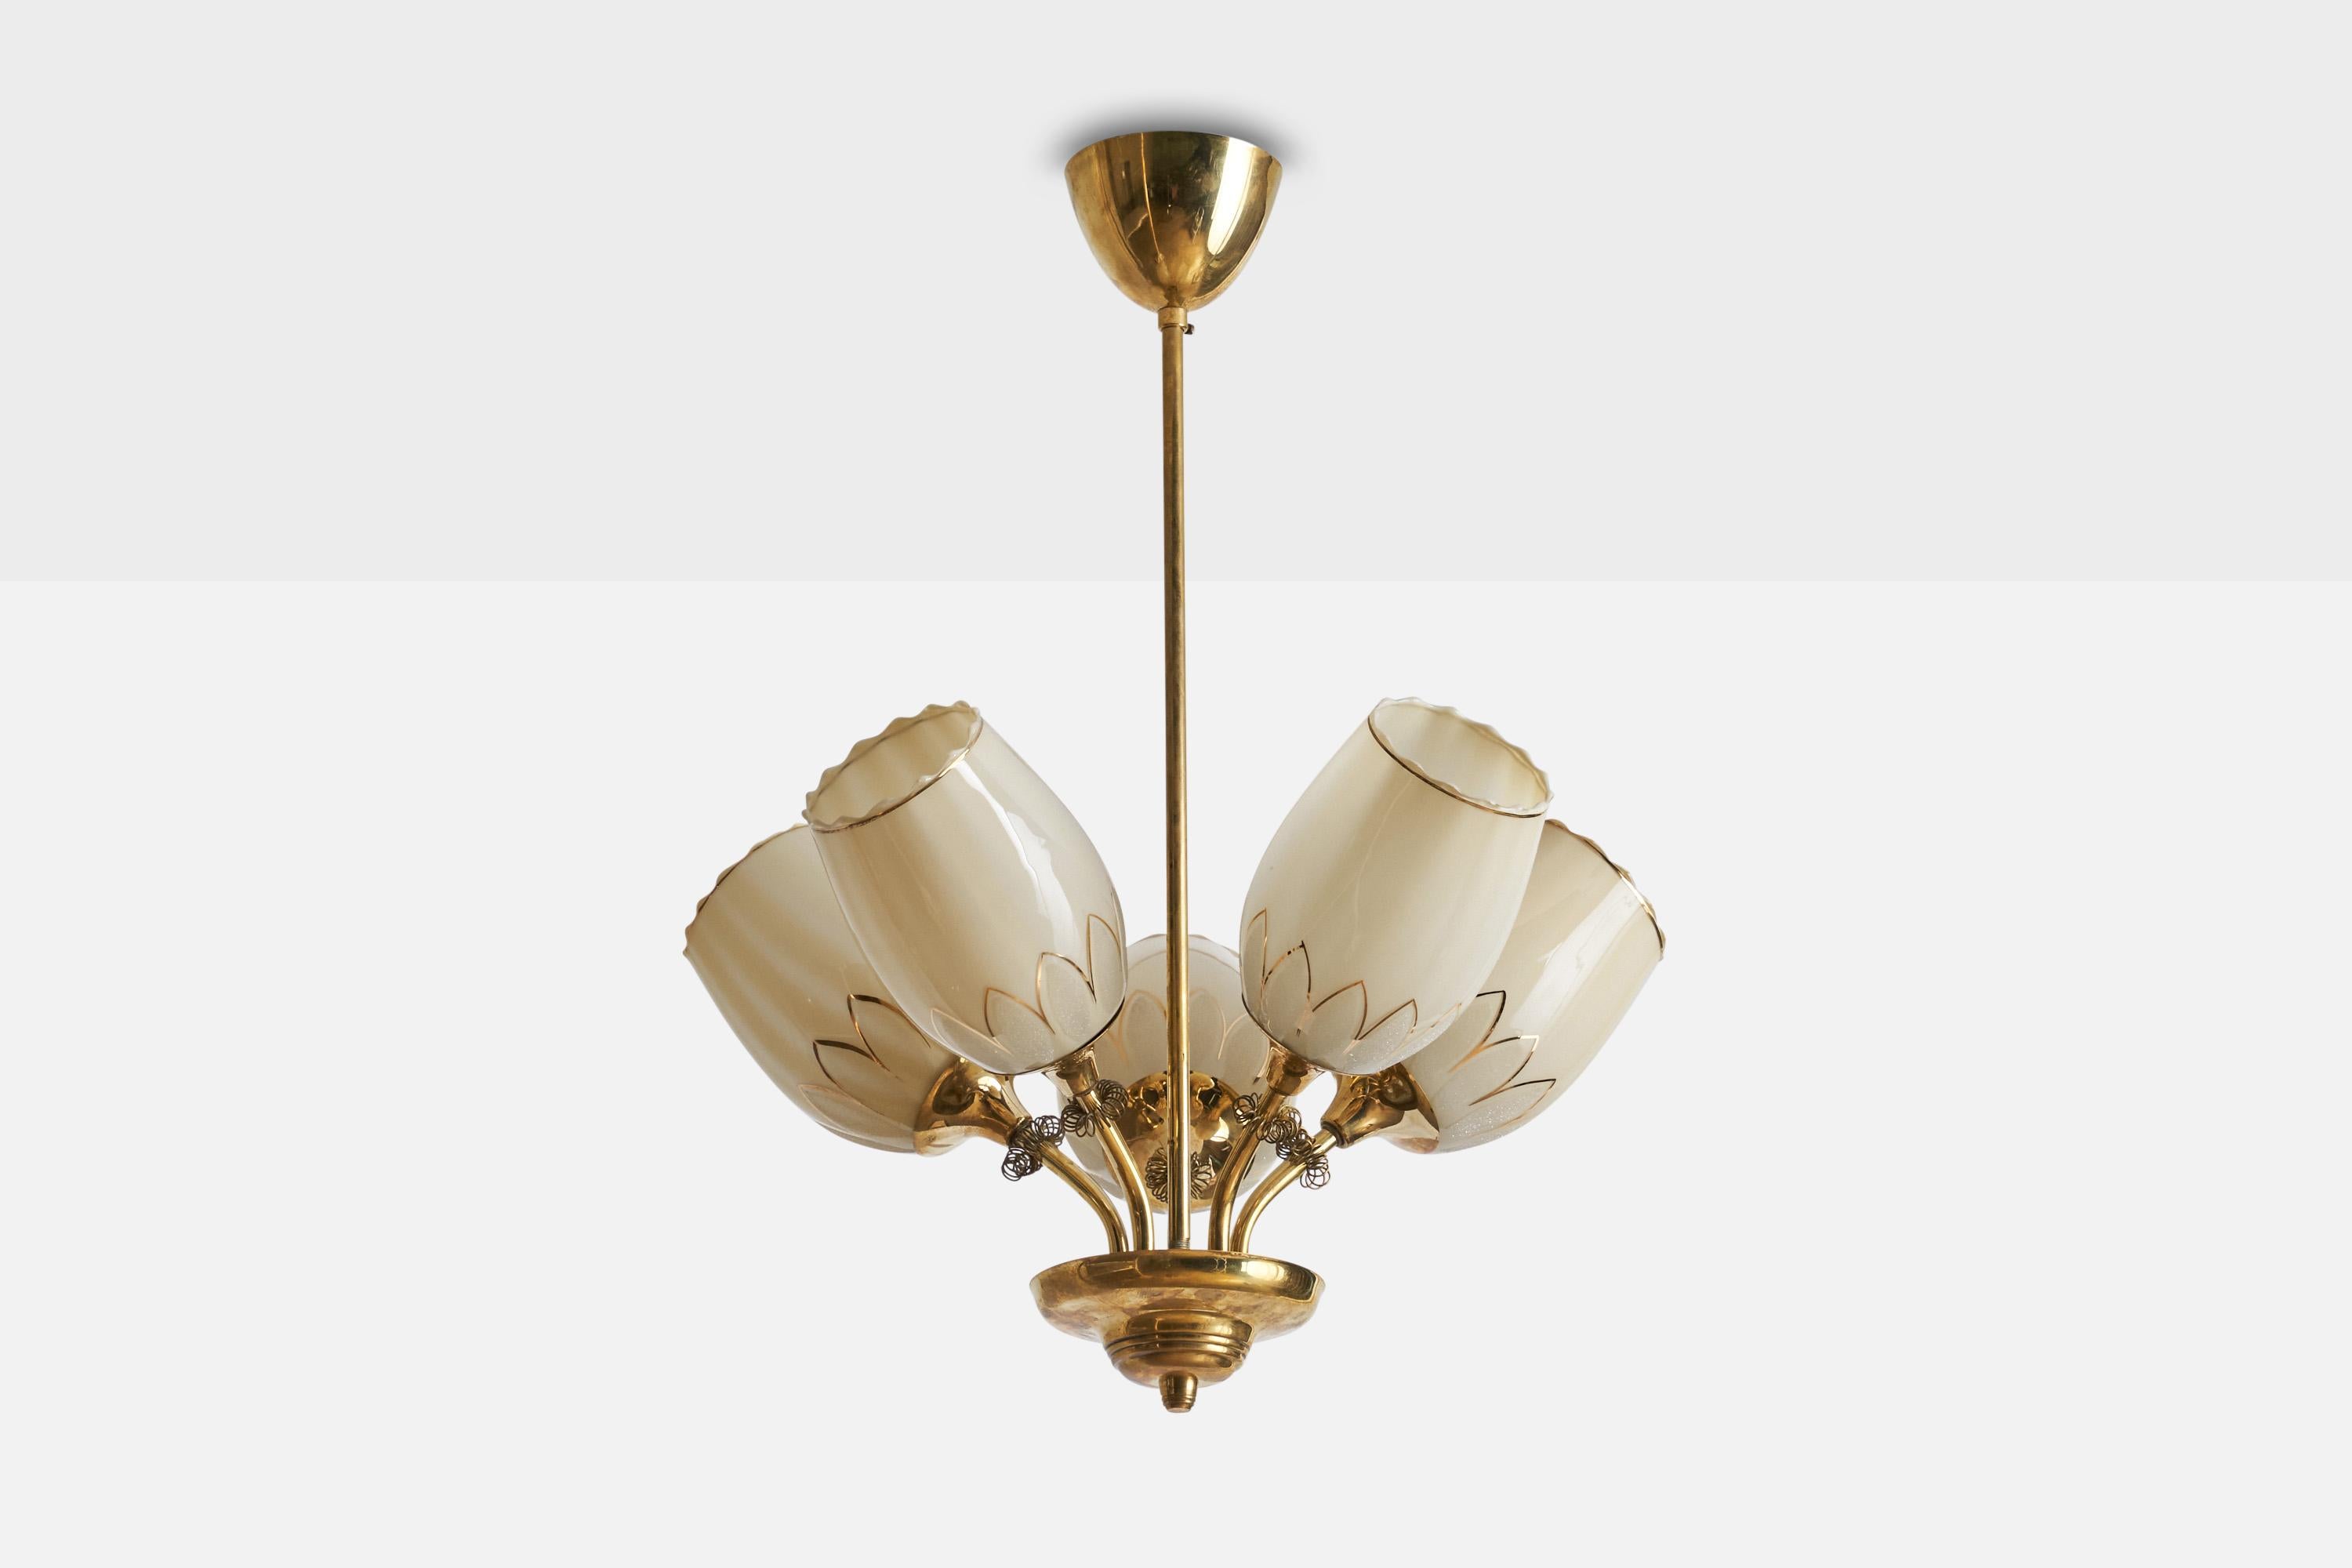 Lustre en laiton et verre opalin doré, conçu et produit en Finlande, années 1940.

Dimensions de l'auvent (pouces) : 3